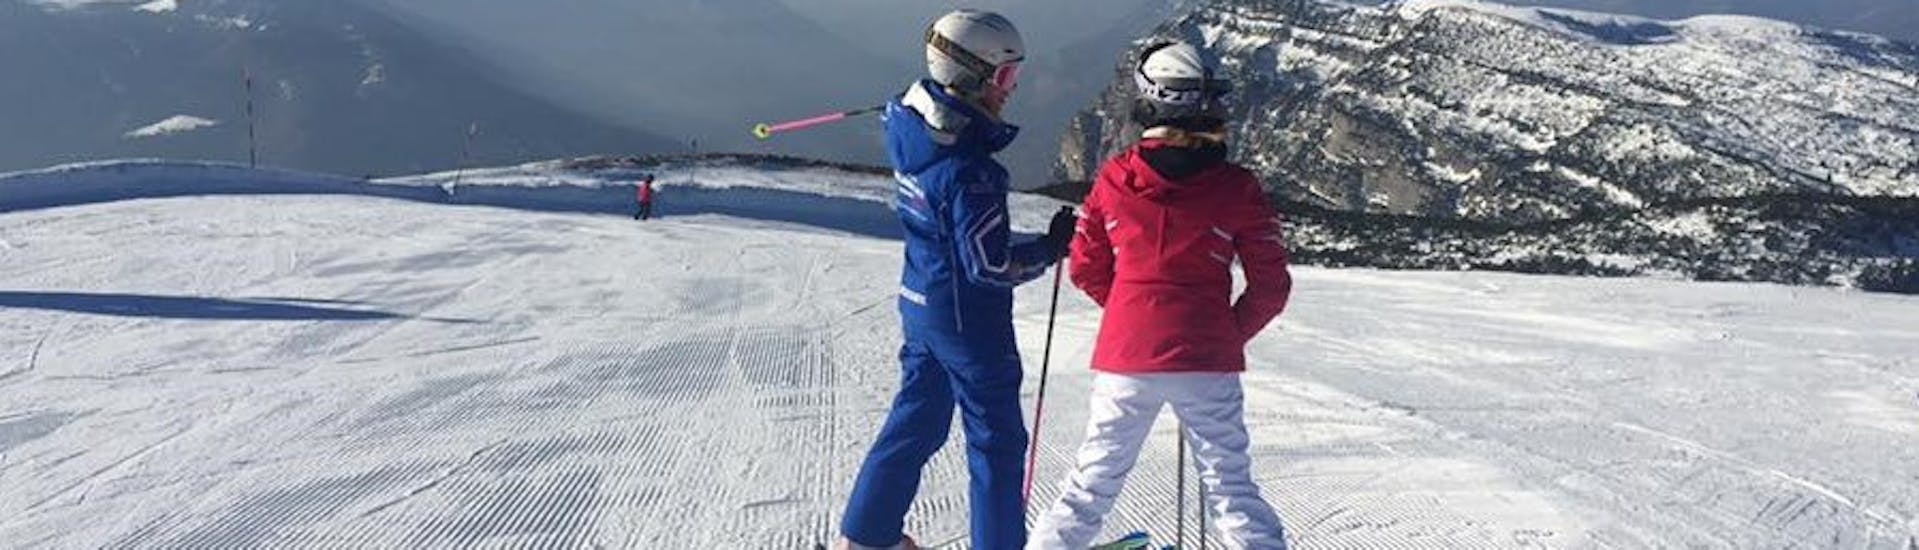 Clases de esquí privadas para adultos a partir de 15 años para todos los niveles.